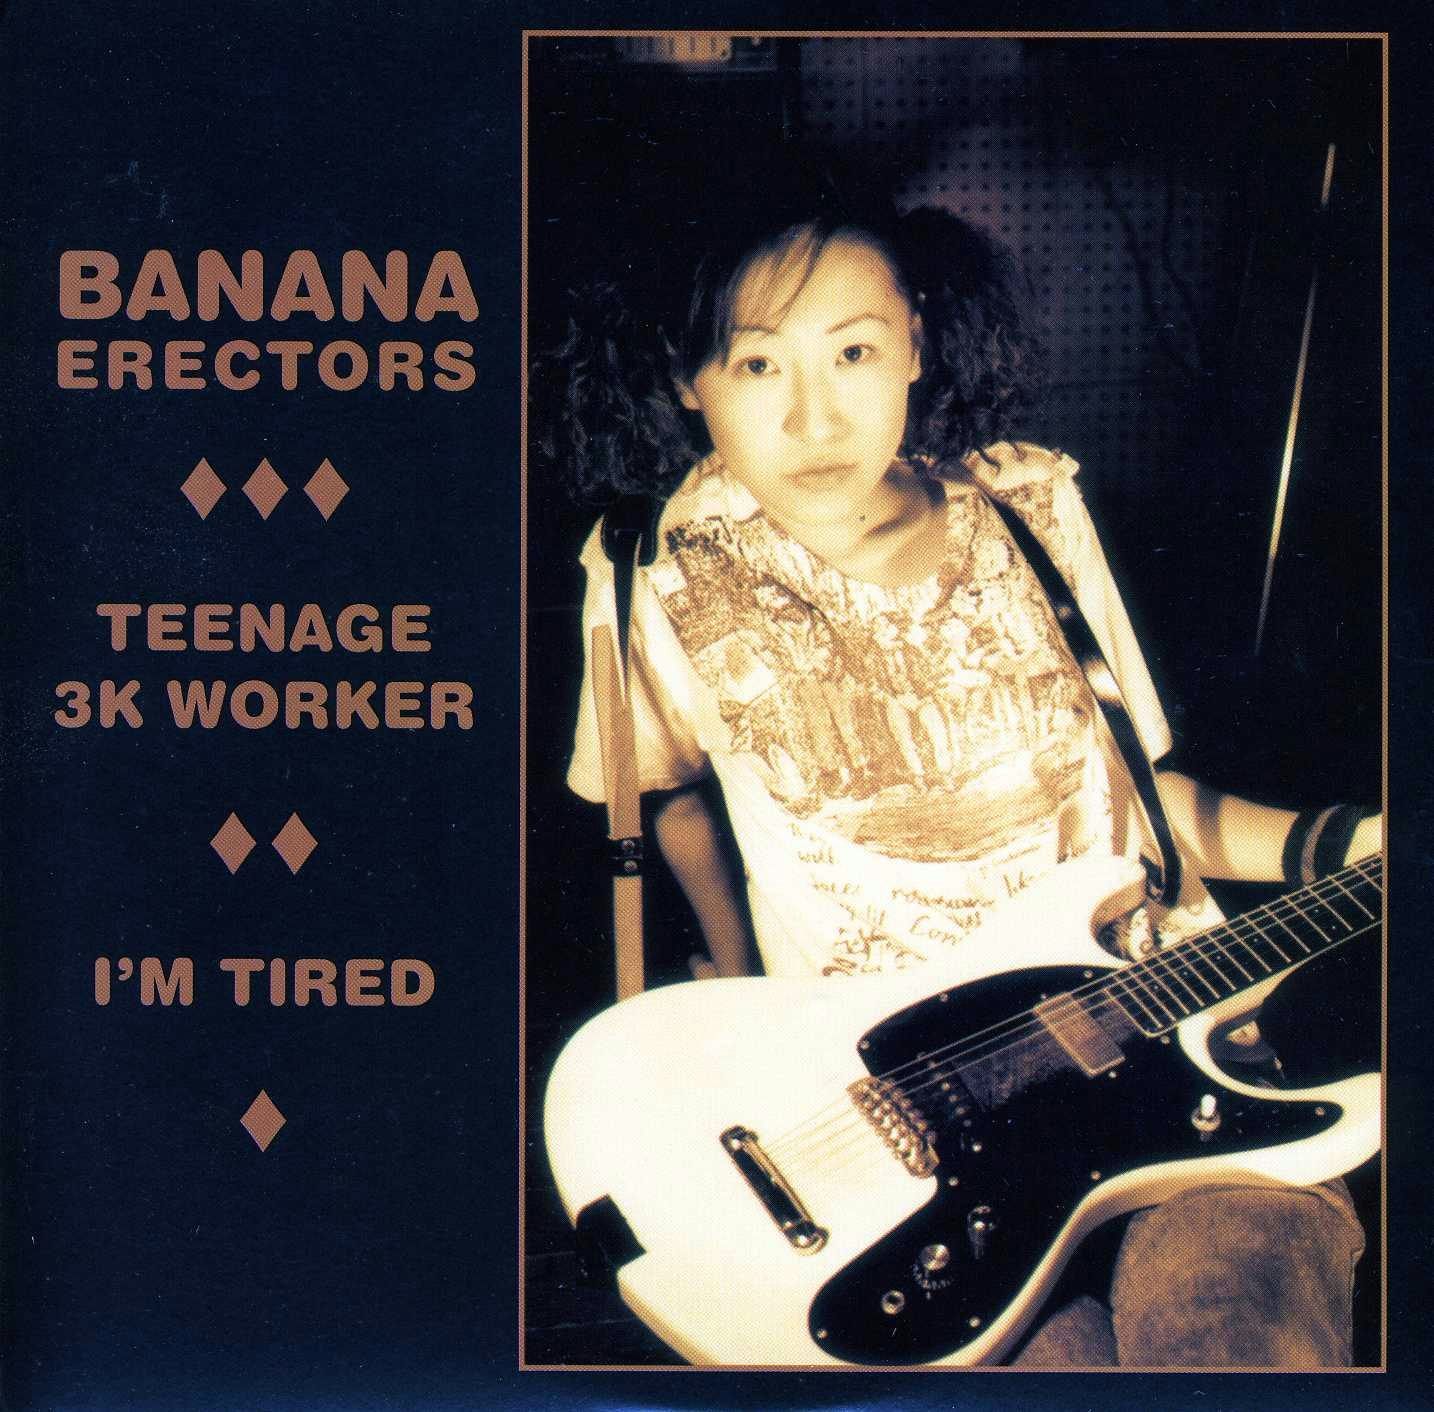 Banana Erectors TEENAGE 3K WORKER Vinyl Record